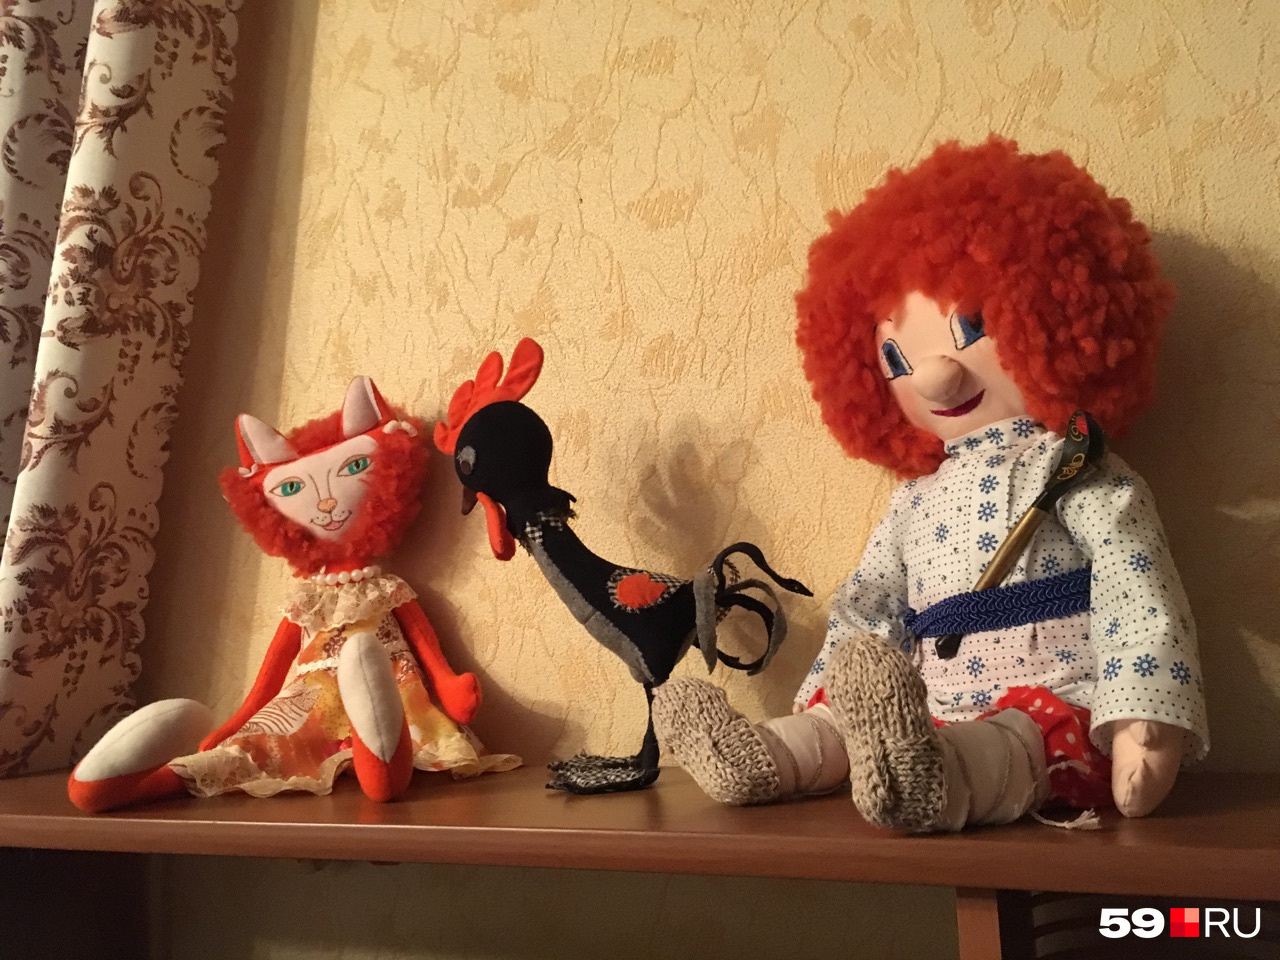 Марина любила шить игрушки и куклы ручной работы